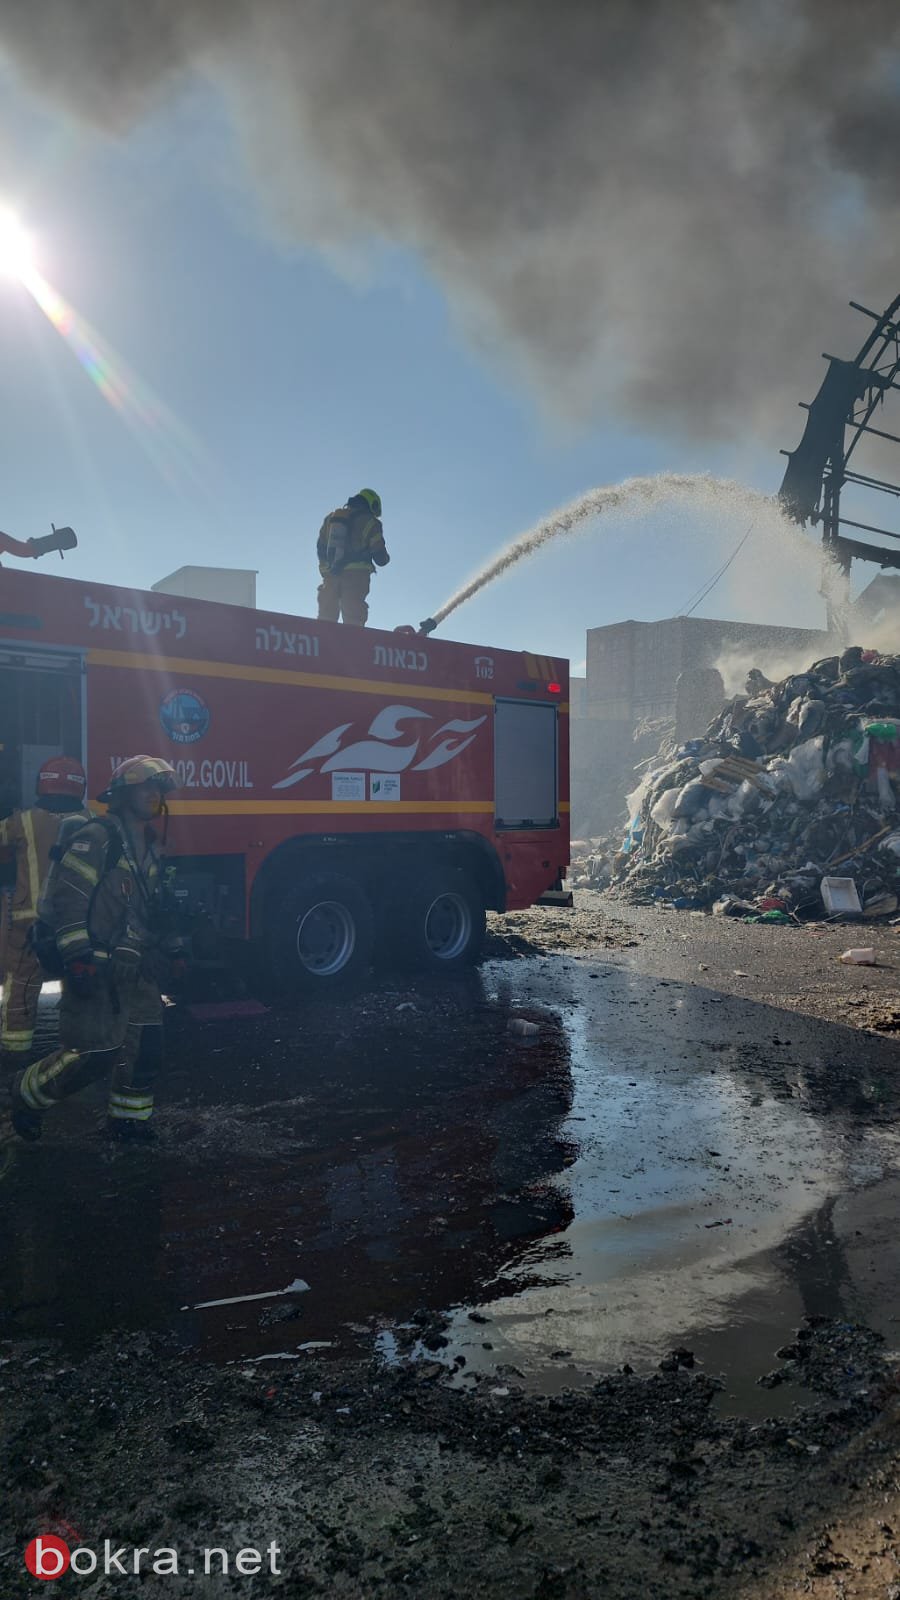 جراء سقوط صاروخ...حريق في منطقه مفتوحه ومصنع لتكرير النفايات. في كريات اتا-0